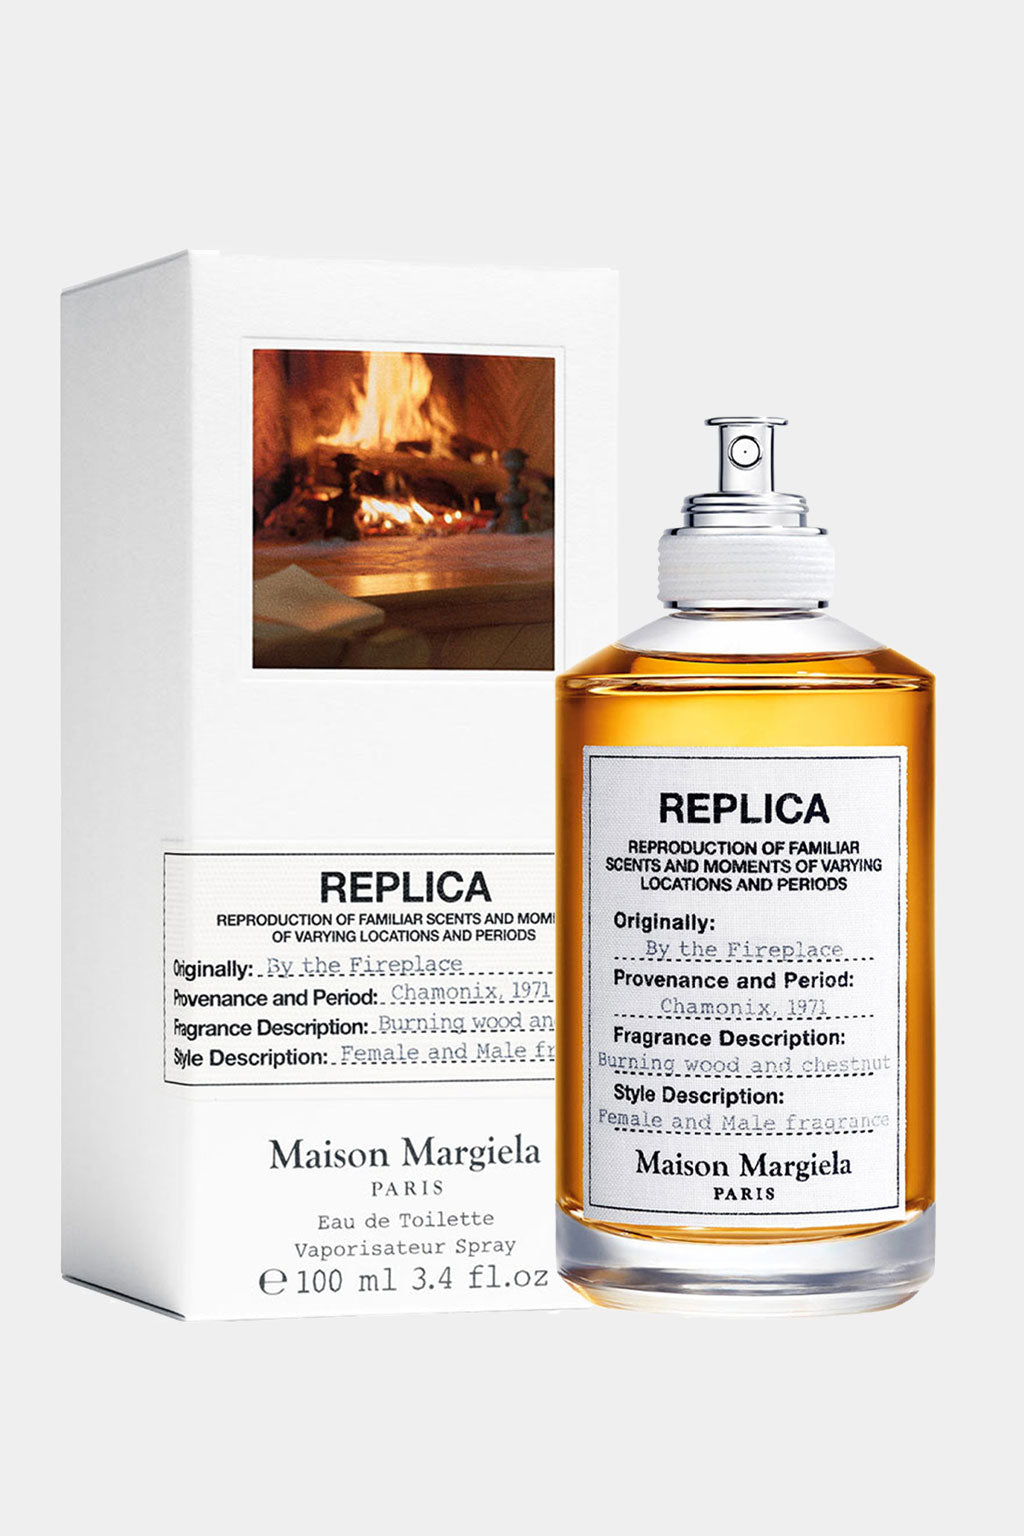 Maison Margiela - Replica By the Fireplace Eau de Toilette